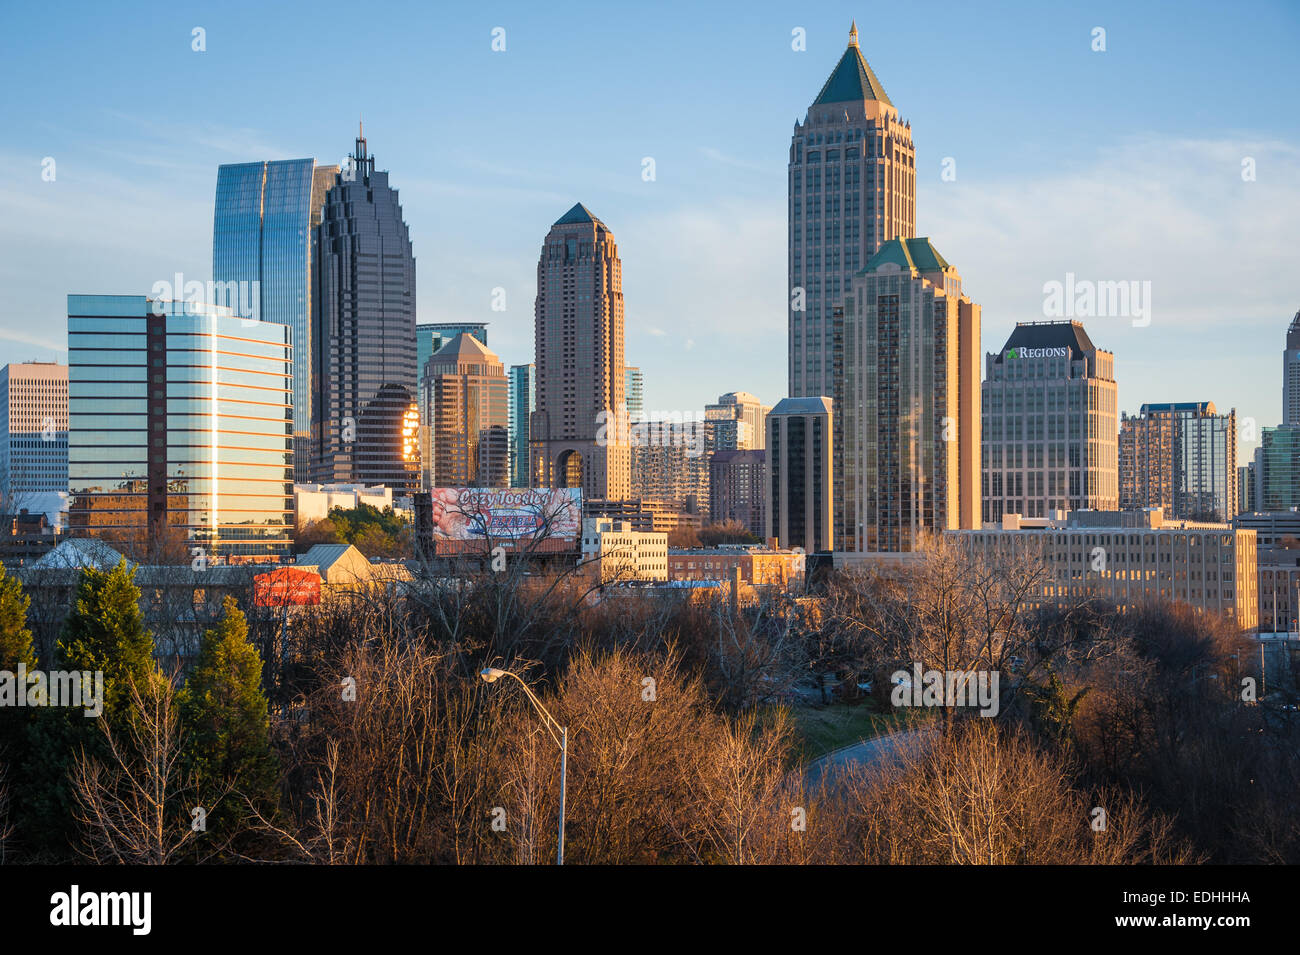 Midtown Atlanta skyline magnifiquement éclairé dans la chaude lumière du coucher du soleil. Atlanta, Georgia, USA. Banque D'Images